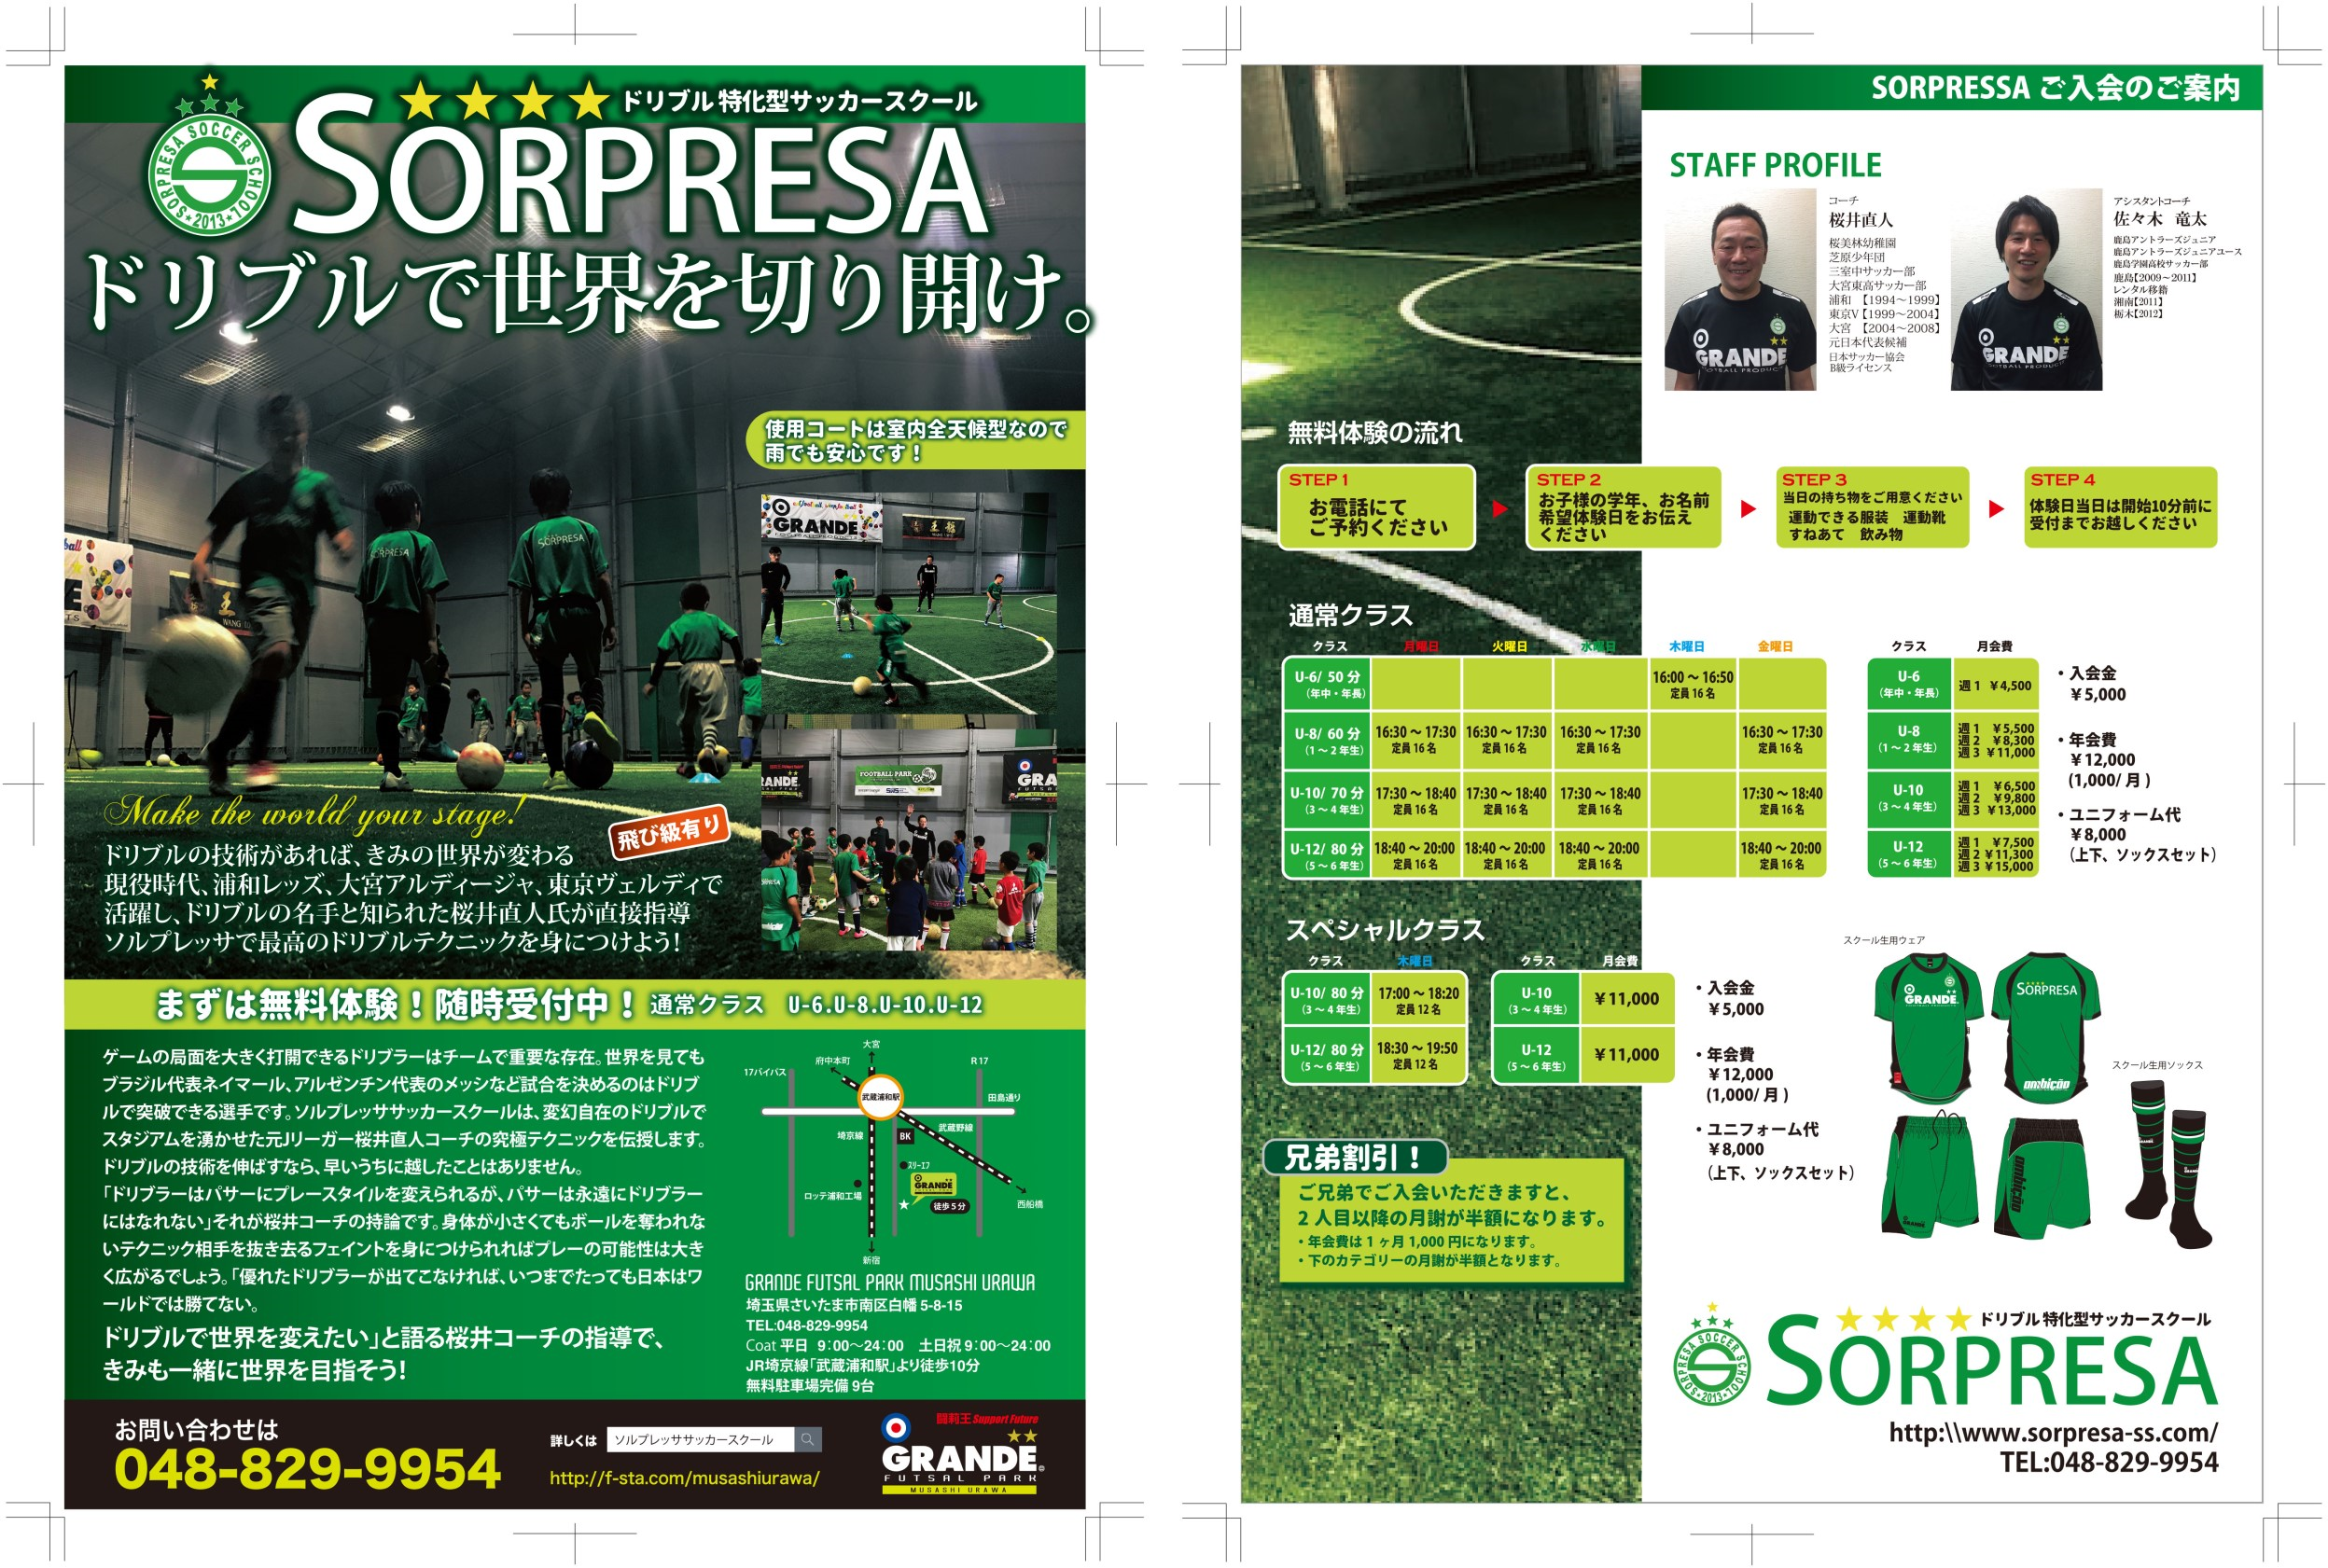 試合結果 ソルプレッササッカースクール ｓｏｒｐｒｅｓａ ｓｏｃｃｅｒ ｓｃｈｏｏｌ 新しいサッカーメディアreibola